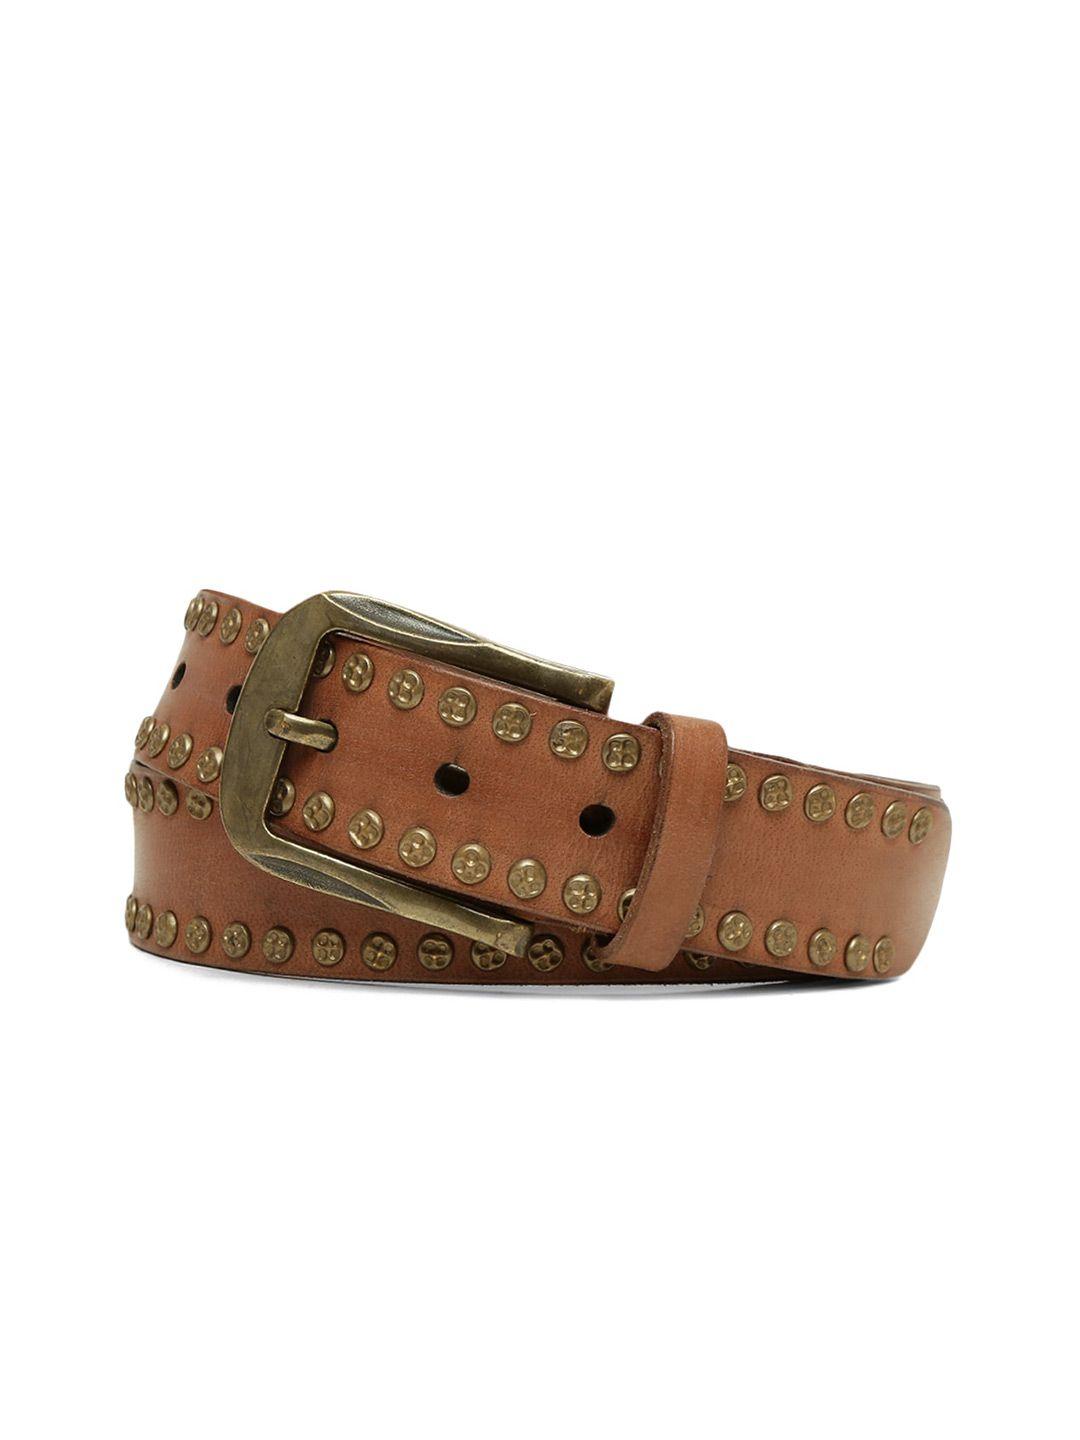 art n vintage men embellished leather belt